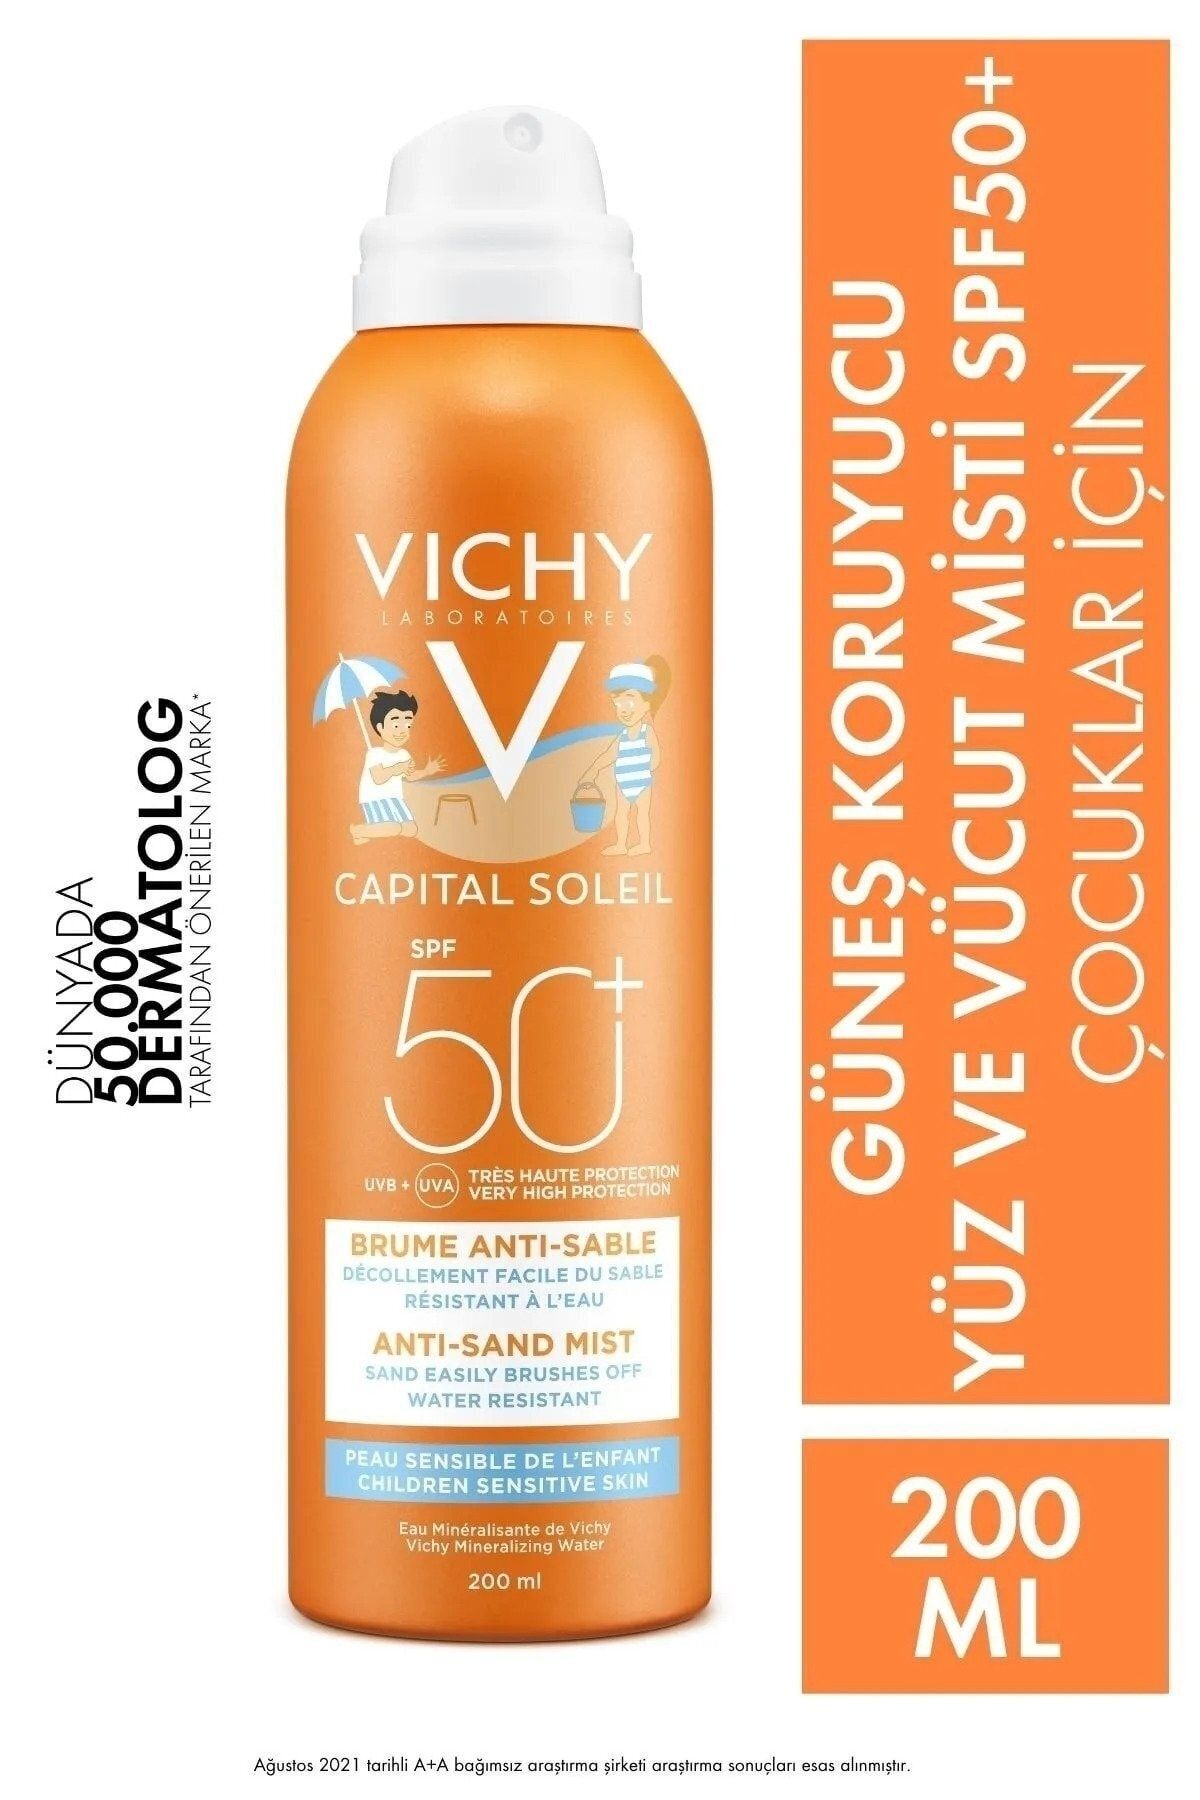 Vichy Yüksek Korumalı Çocuk Güneş Kremi Sprey 200ml* Capital Soleil SPF 50